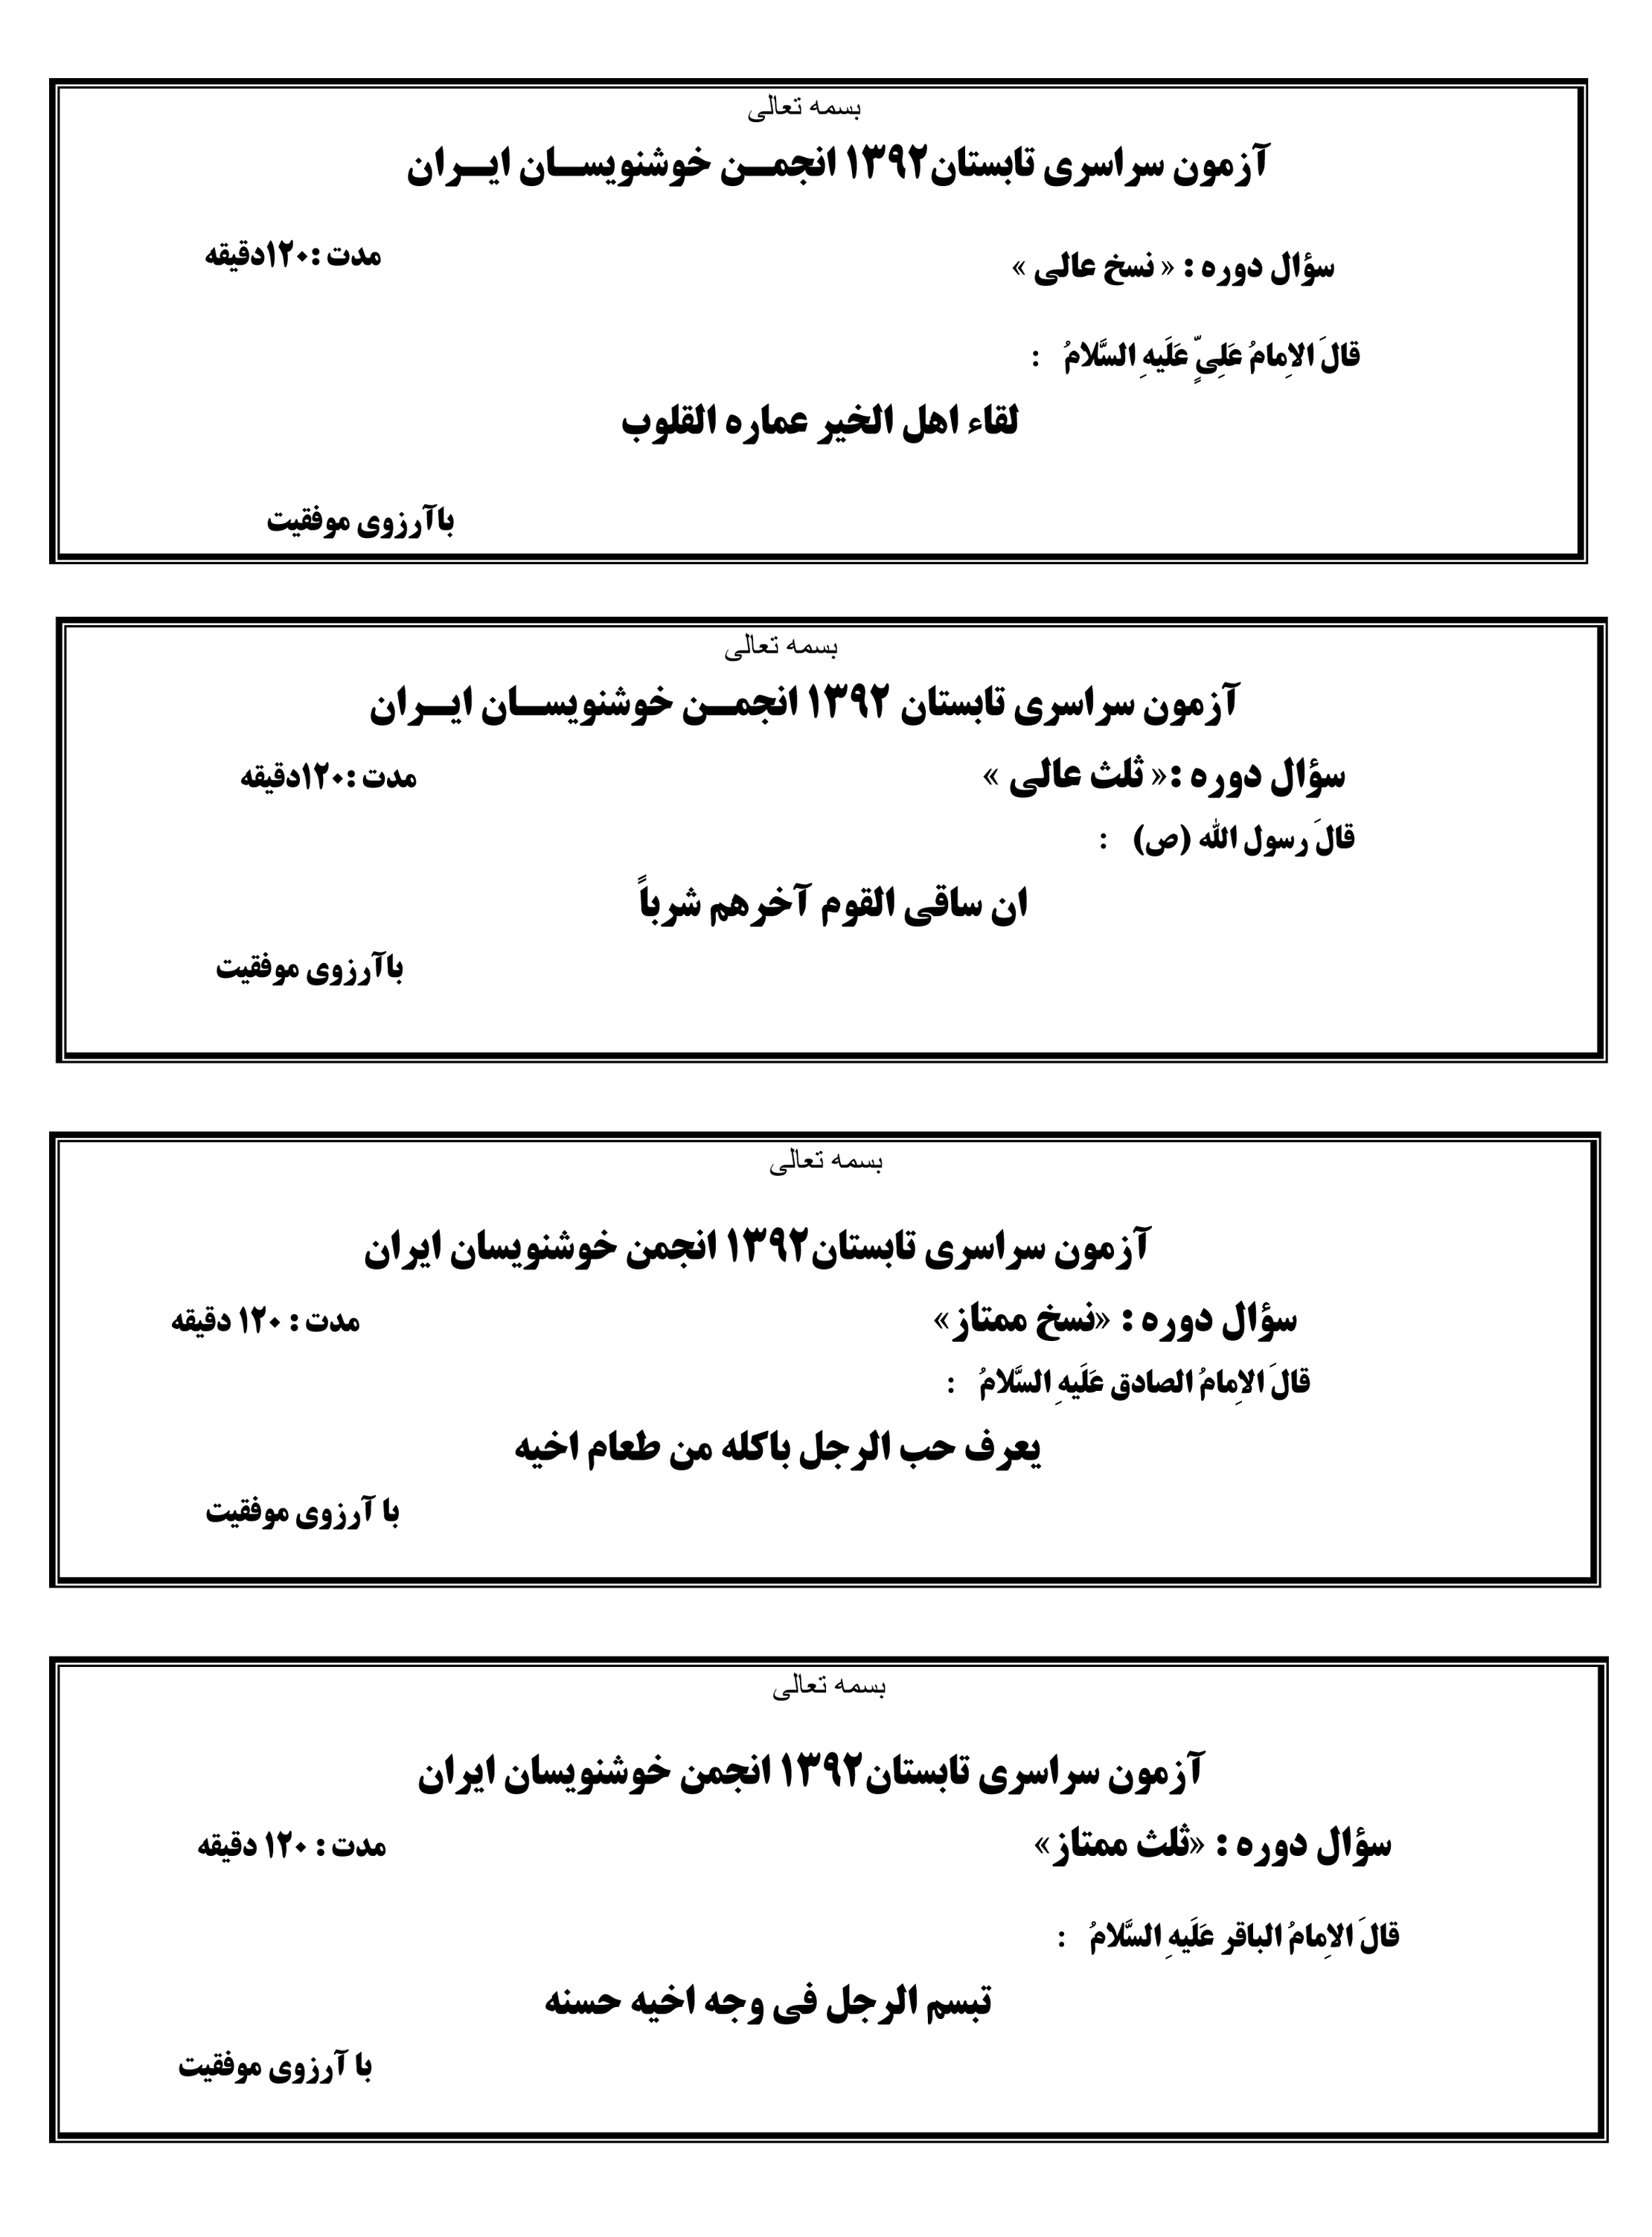 سوالات تابستان 92 انجمن خوشنویسان ایران